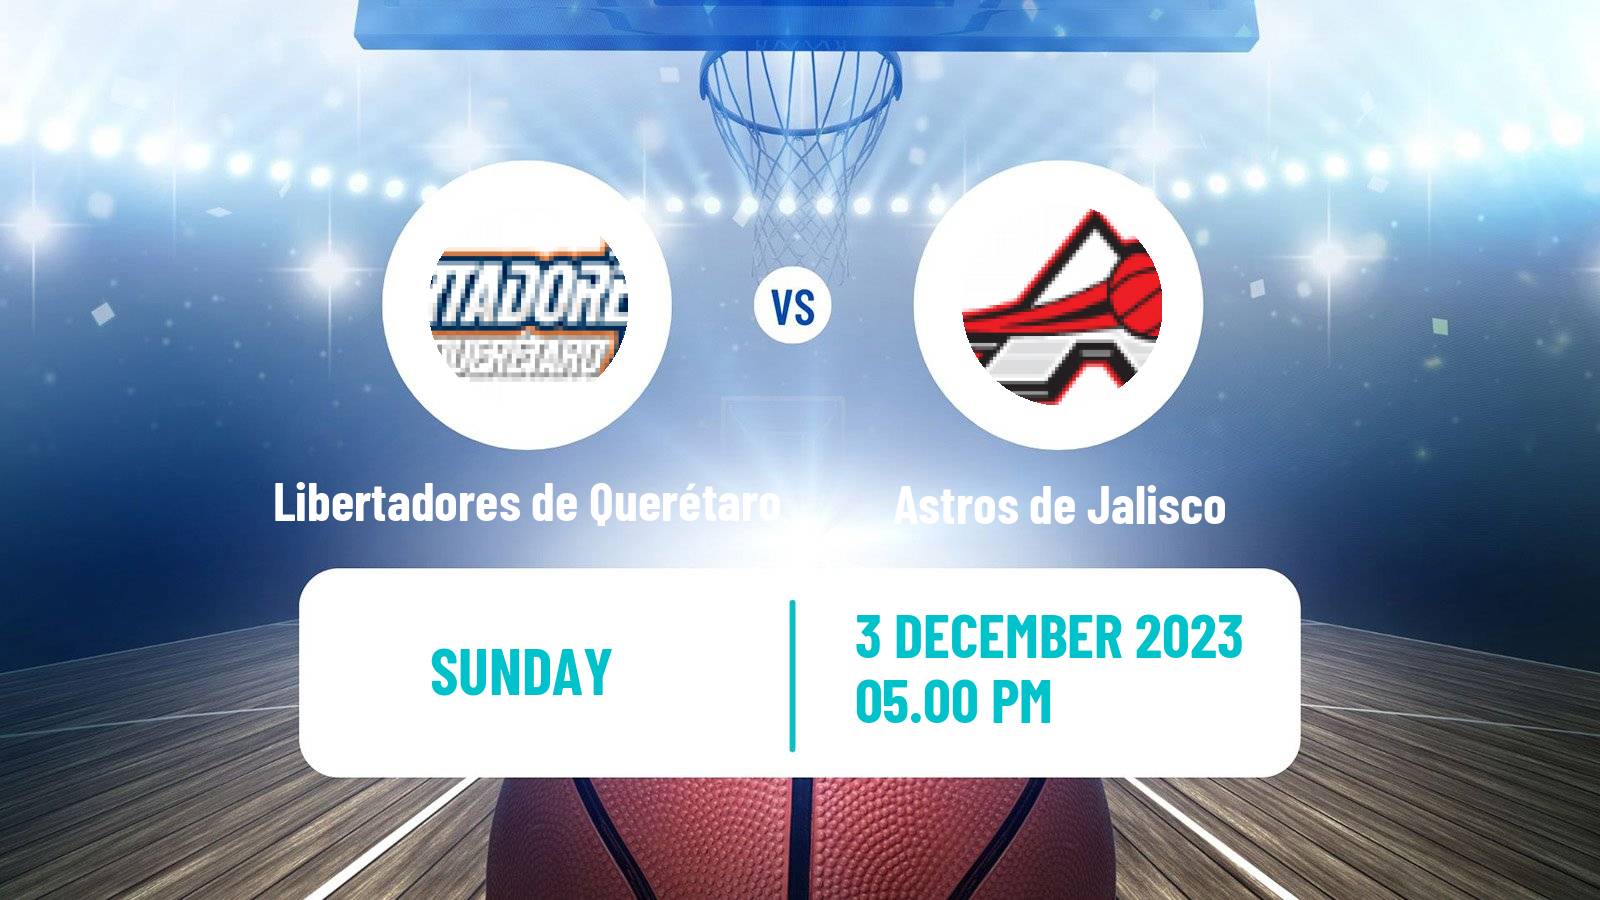 Basketball Mexican LNBP Libertadores de Querétaro - Astros de Jalisco